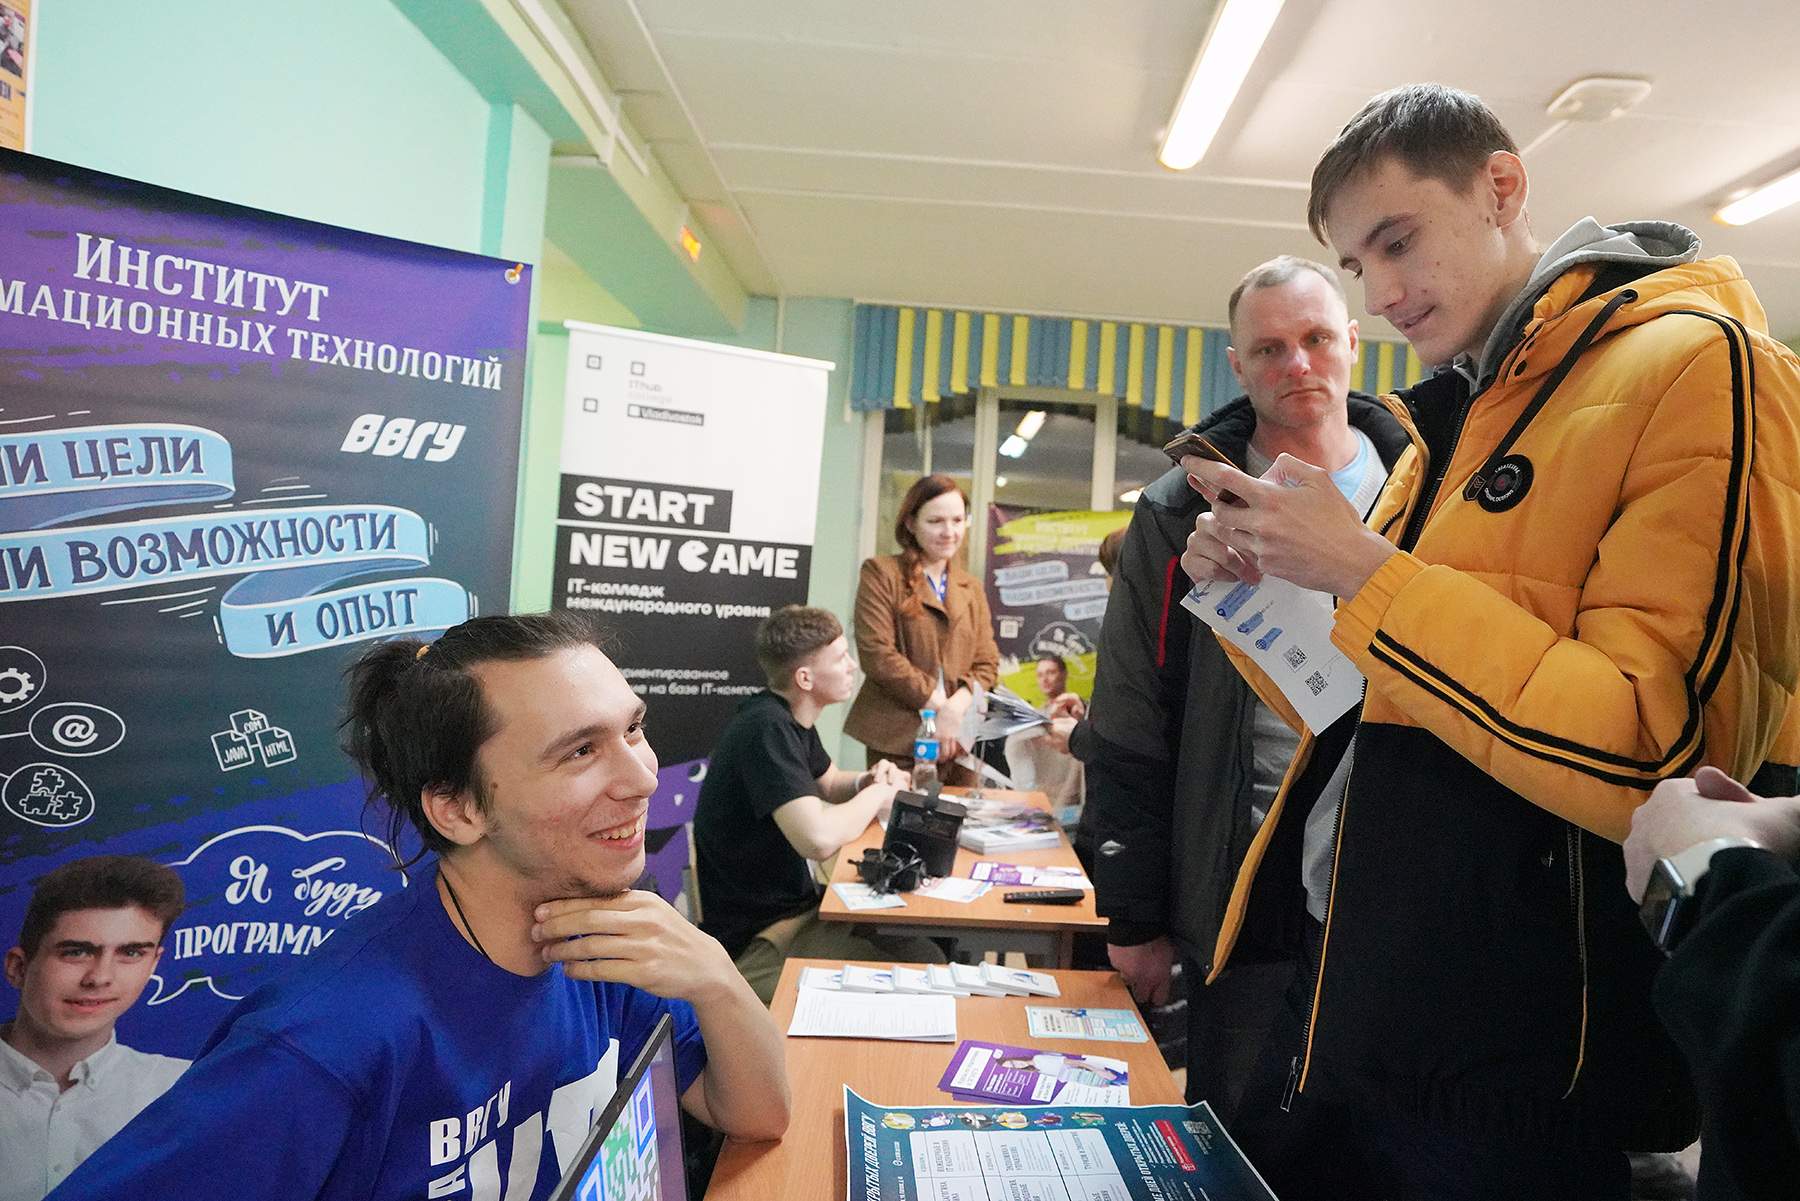 Несколько сотен школьников из Владивостока познакомились с преподавателями и Институтами ВВГУ